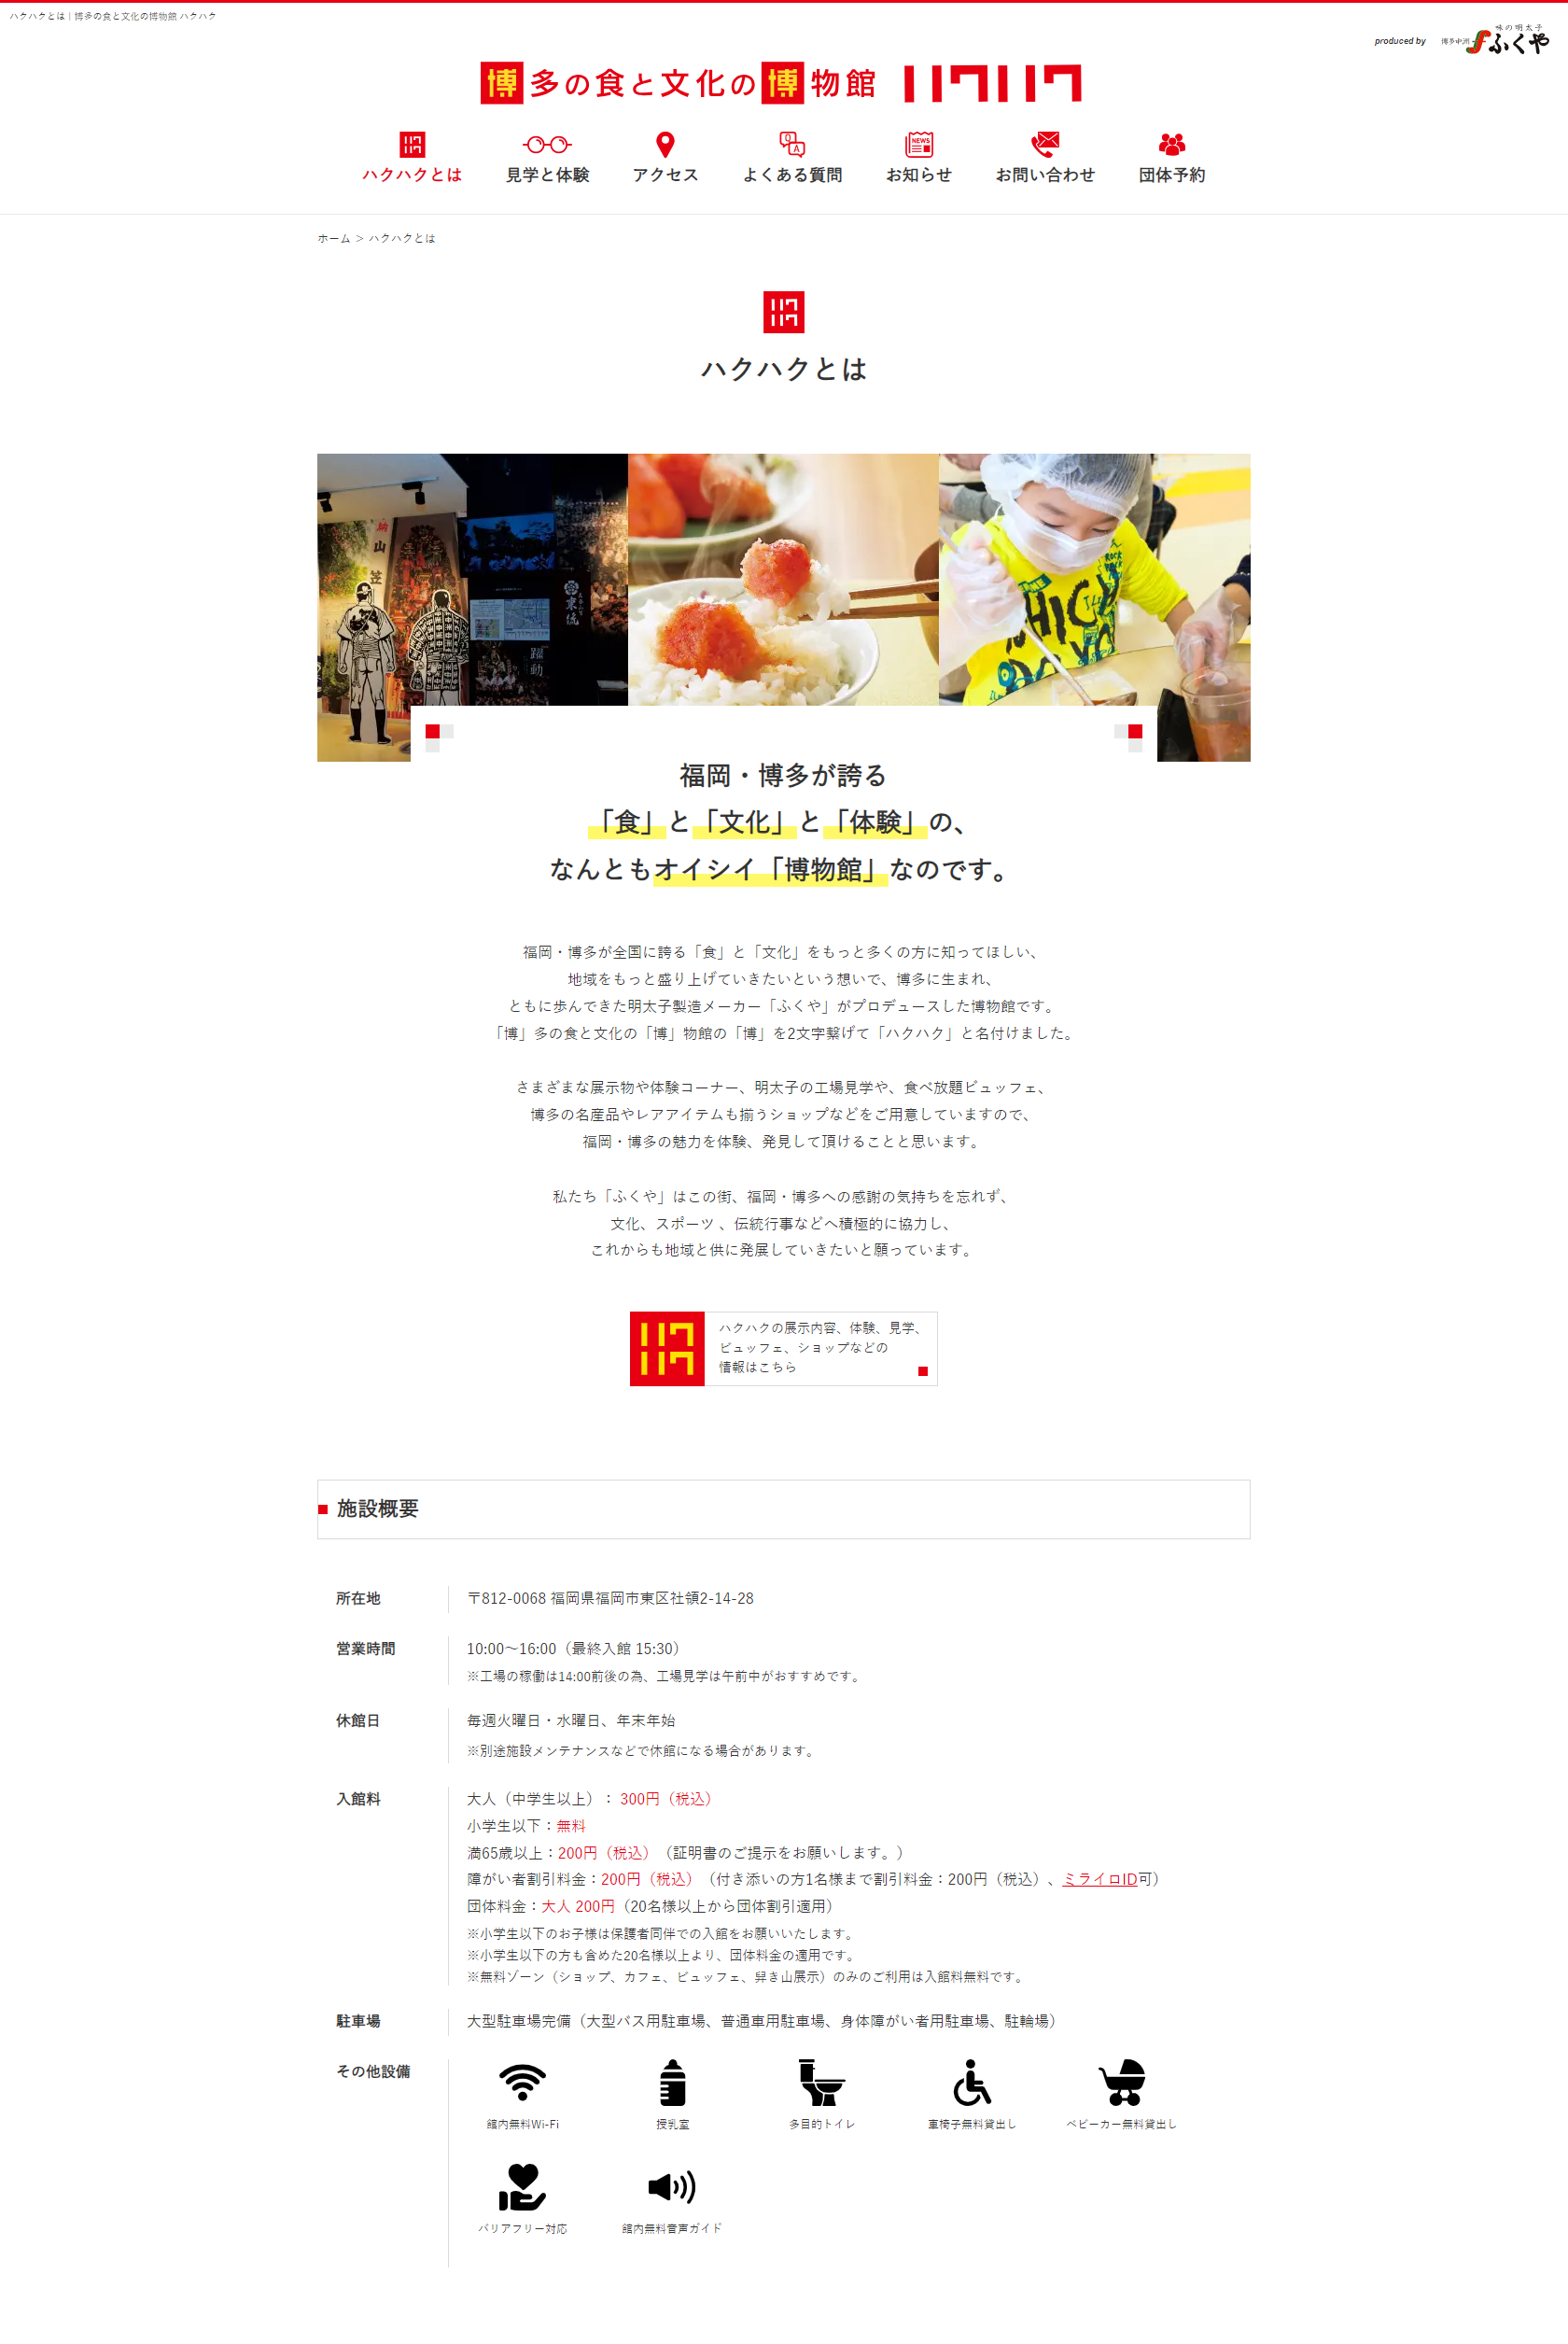 博多の食と文化の博物館 ハクハク - 117hakuhaku.com